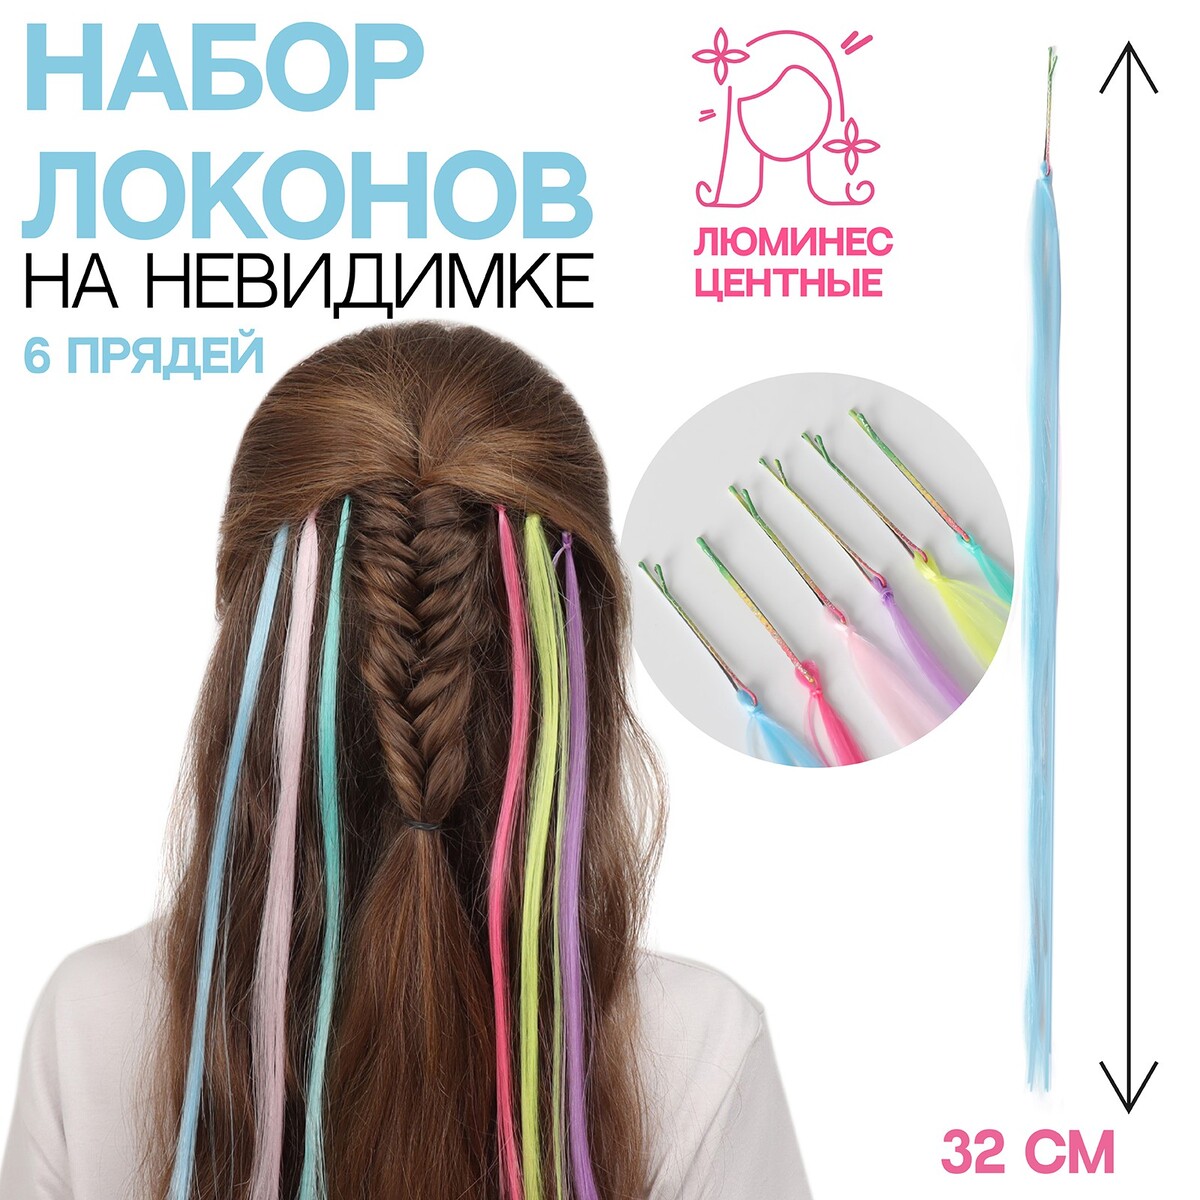 Набор локонов, прямой волос, на невидимке, 32 см, 6 прядей, люминесцентные, разноцветные спираль для украшения локонов